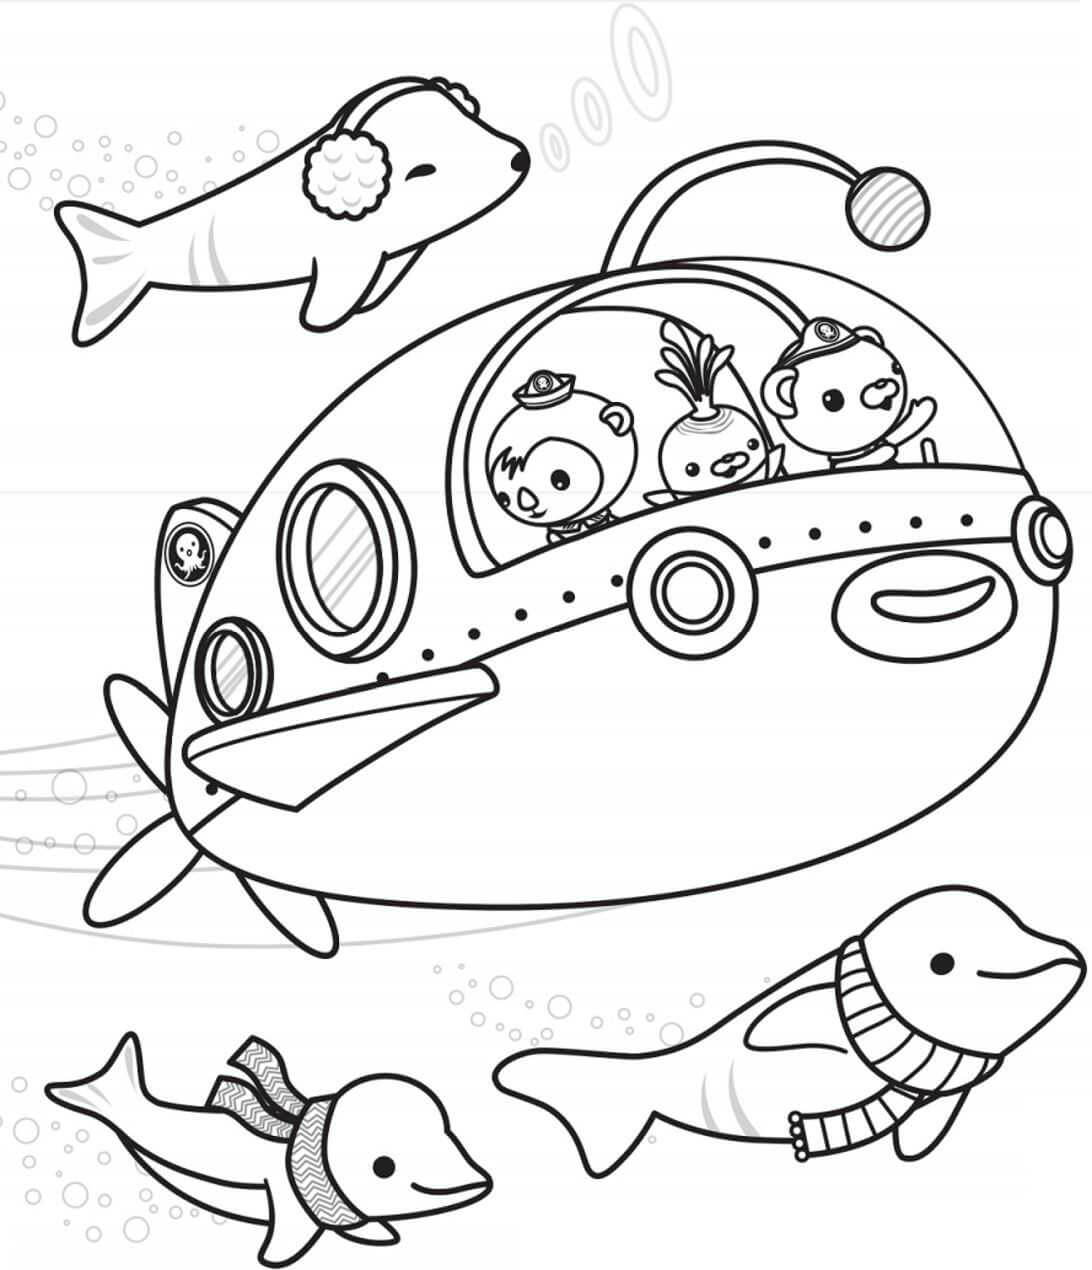 Раскраска подводная лодка для детей 5-6 лет